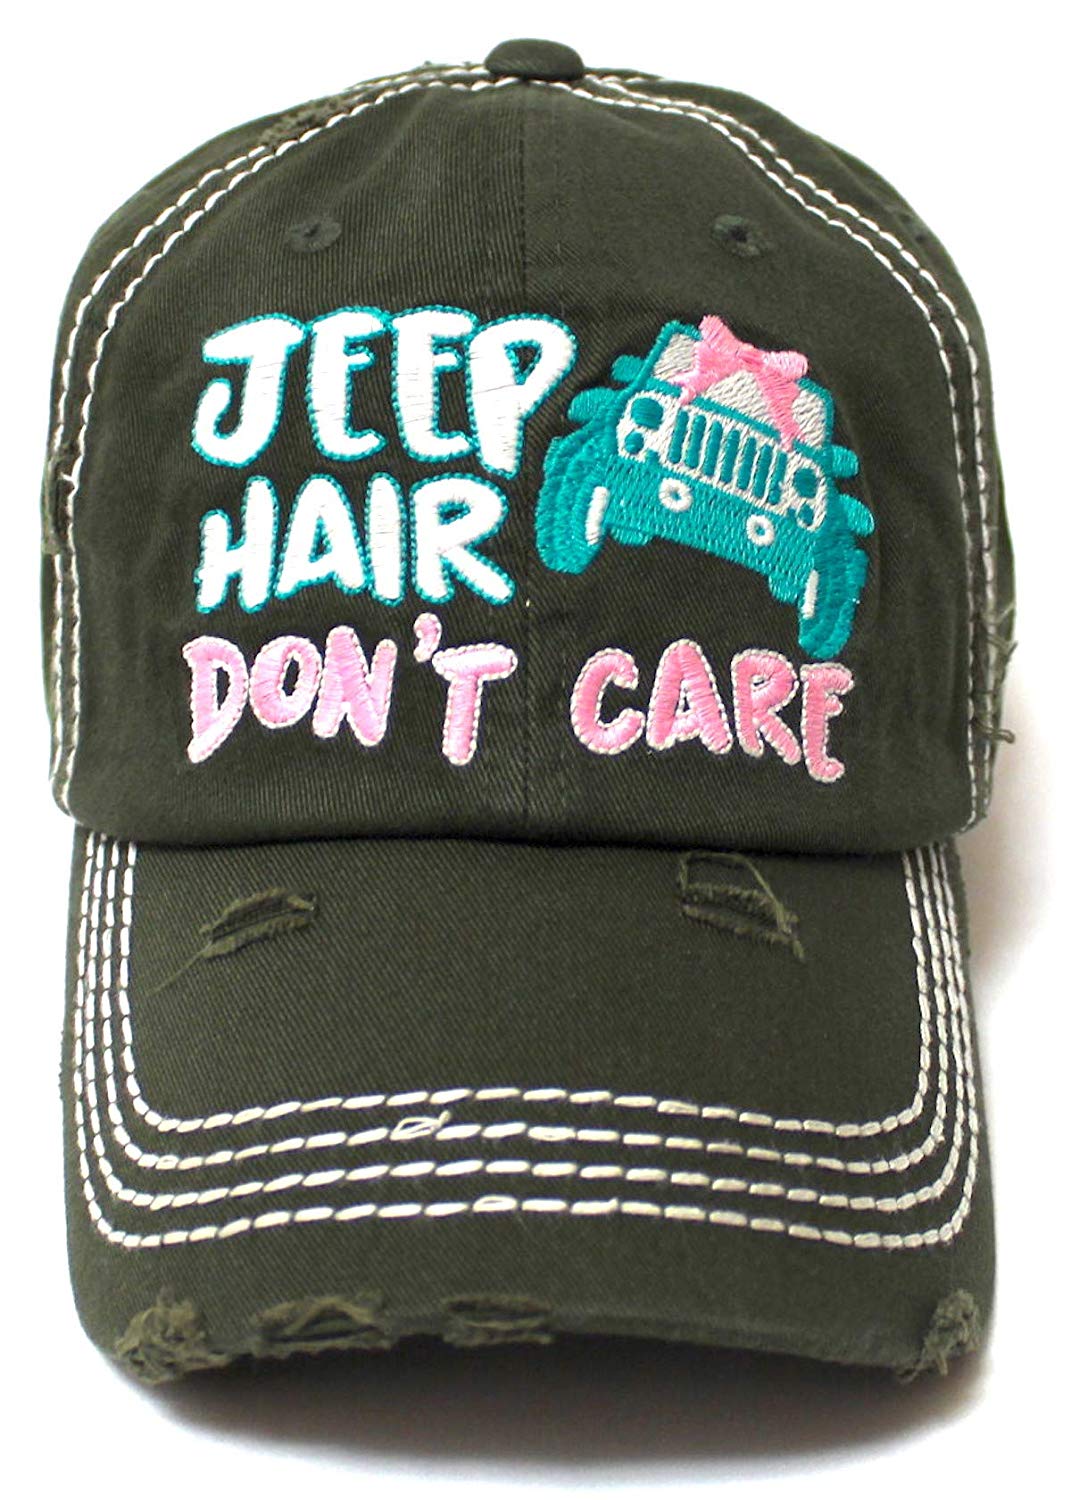 Ladies Bow-Tie Jeep Hair Don't Care Monogram Cheer Baseball Hat, Dark Olive - Caps 'N Vintage 